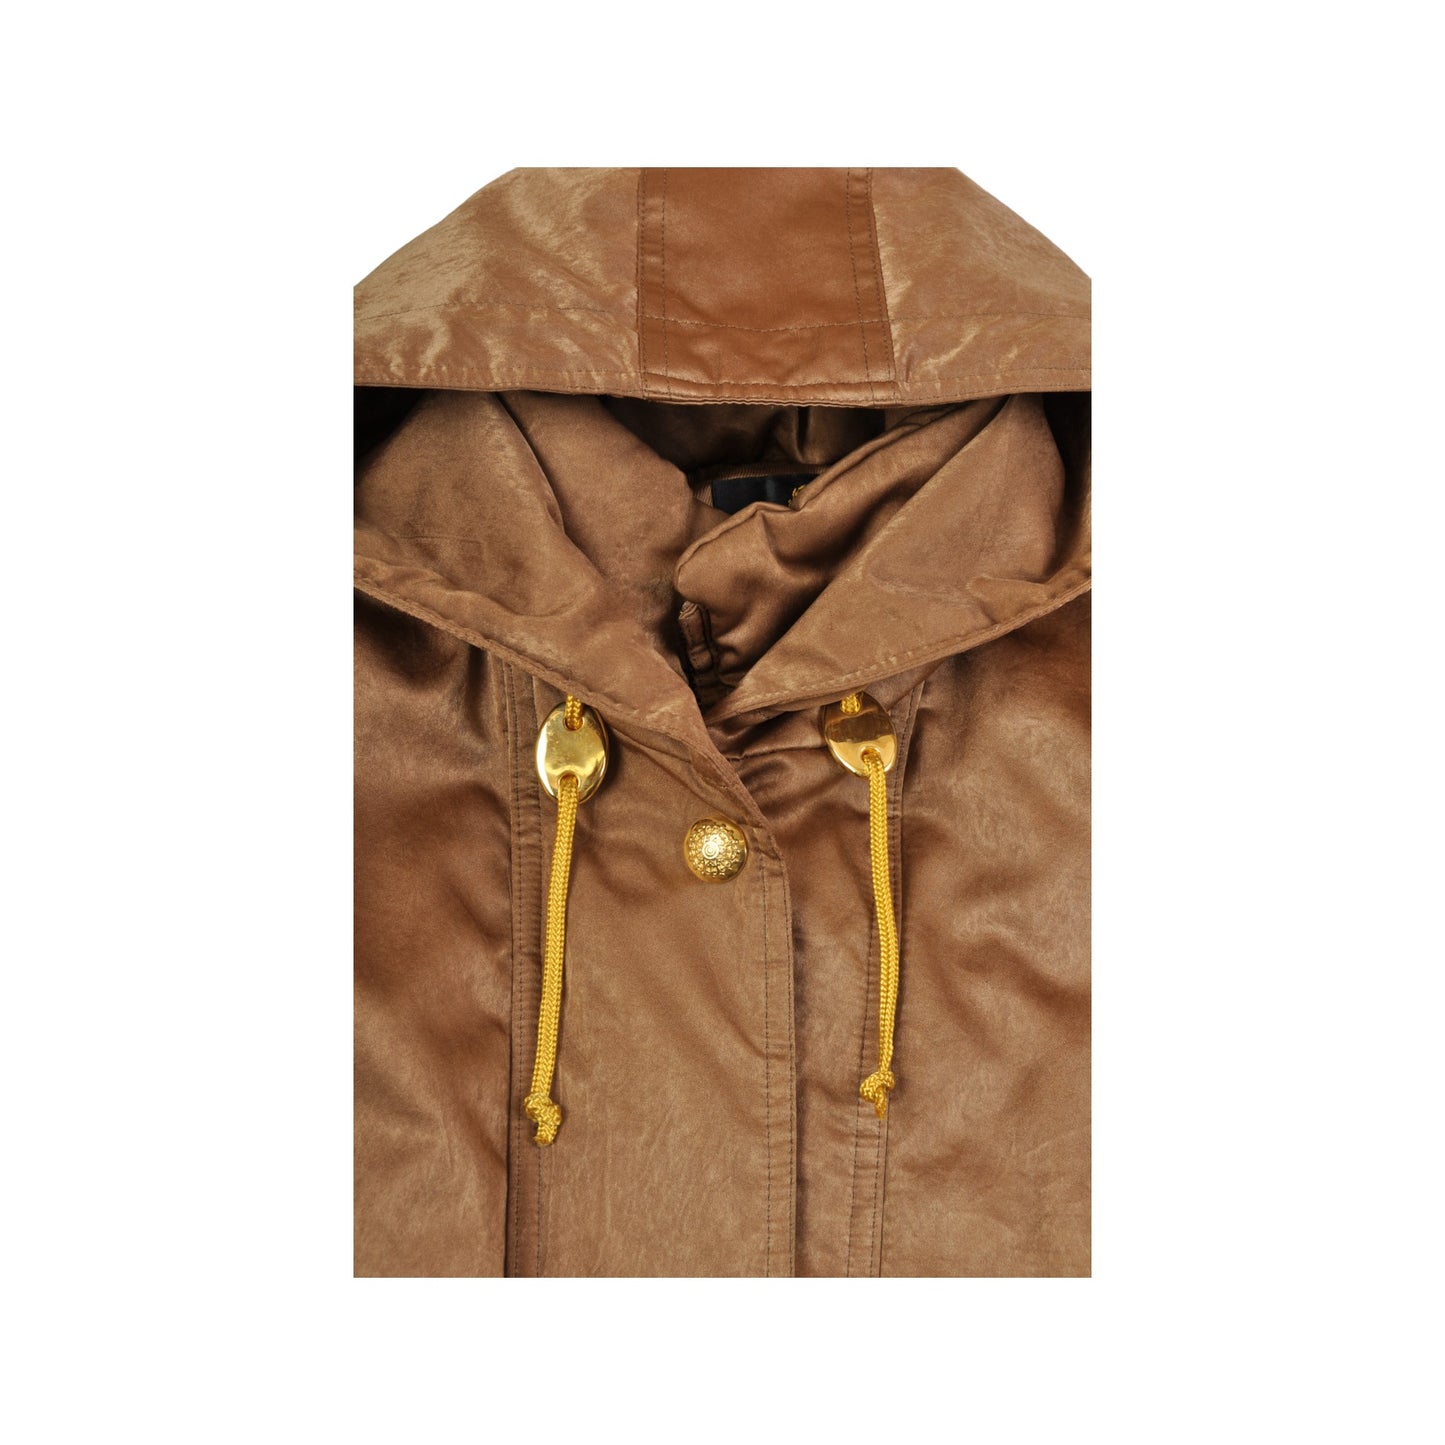 Vintage Ski Jacket 80s Style Brown Ladies Medium